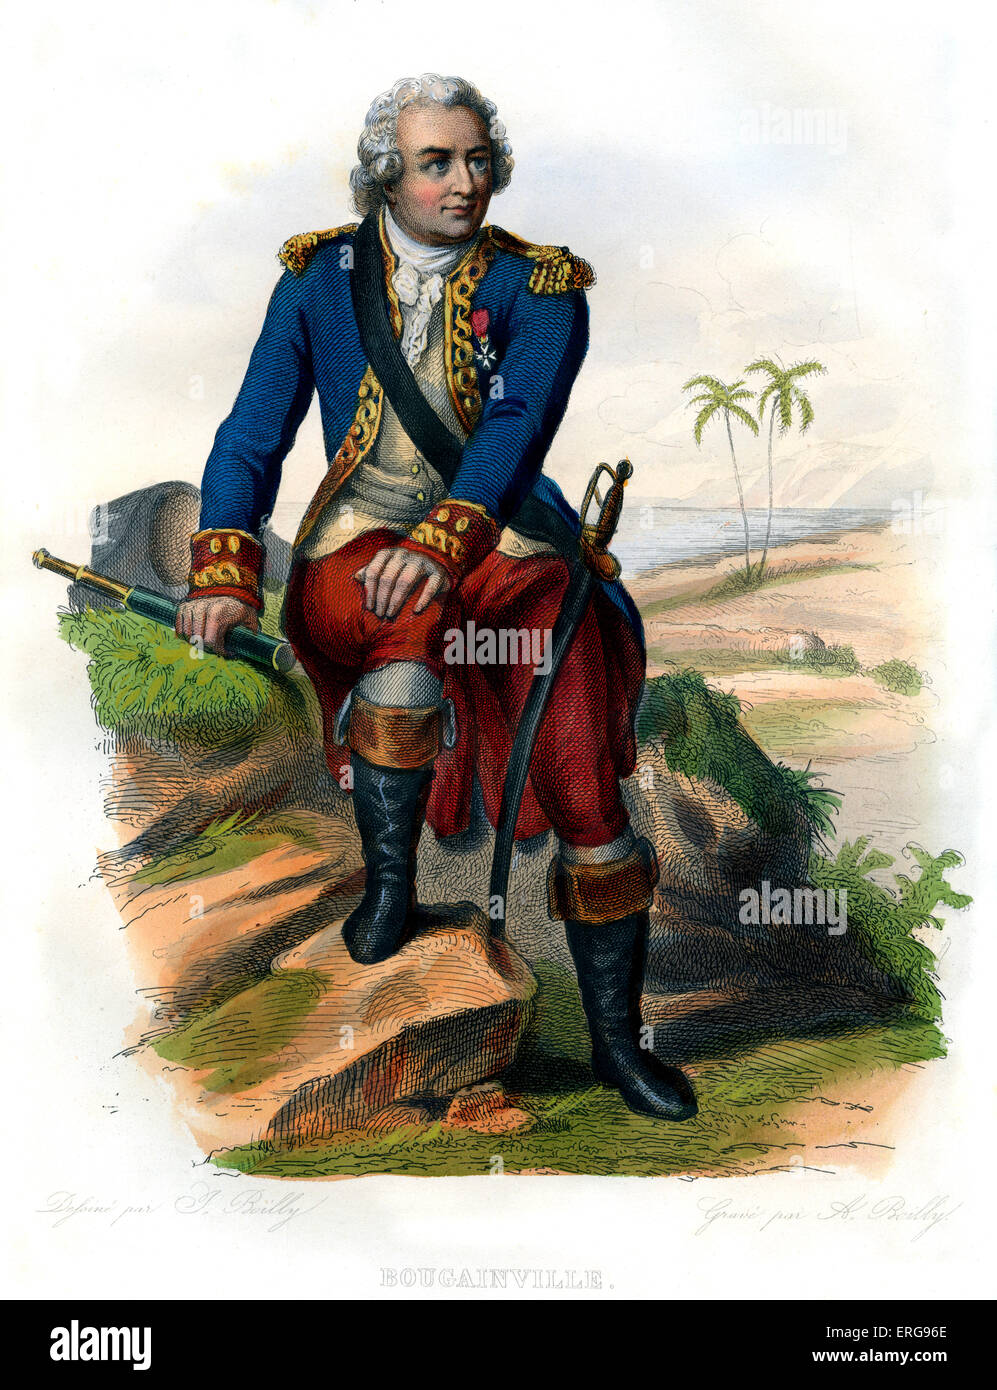 Louis Antoine de Bougainville.  Französisch, Navigator, Explorer und militärischer Befehlshaber.  1729 – 1811. Kupferstich von A. Boilly, c.1866. Stockfoto